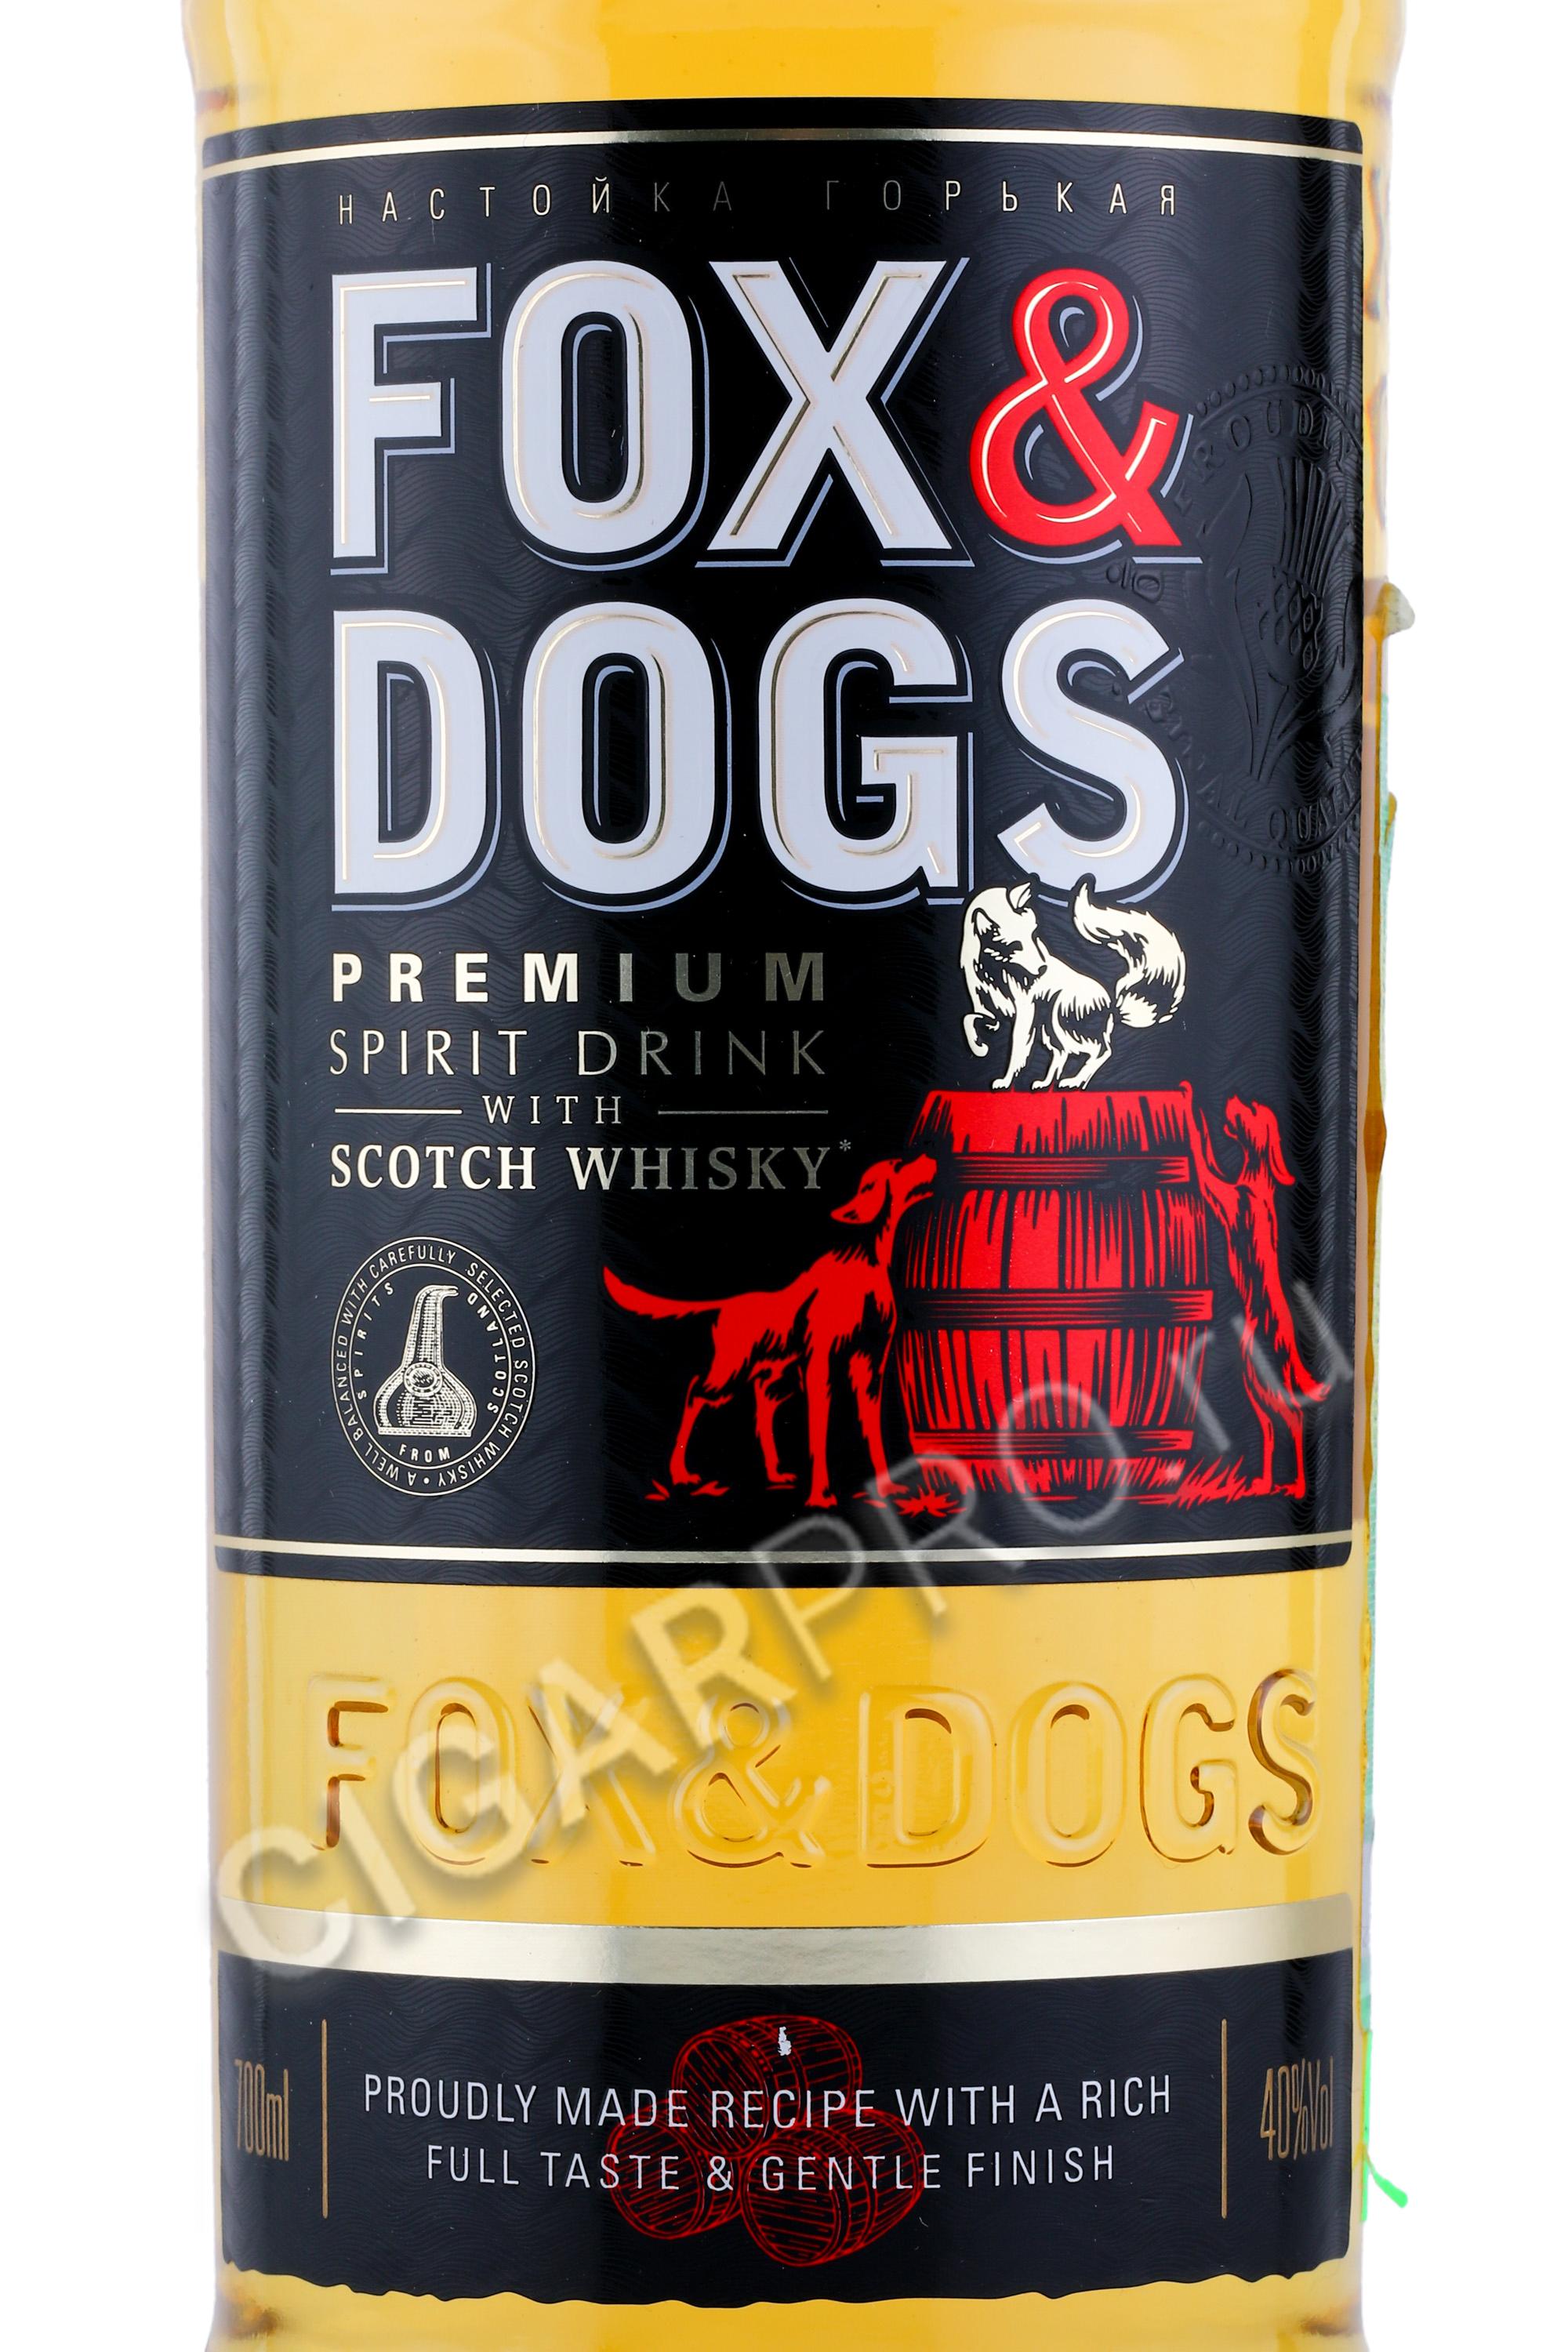 Фокс догс 0.7. Виски Fox энд Dogs. Виски Фокс энд догс 0.7. Виски Фокс энд догс 40% 0,7л. Виски Fox and Dogs 0.5.